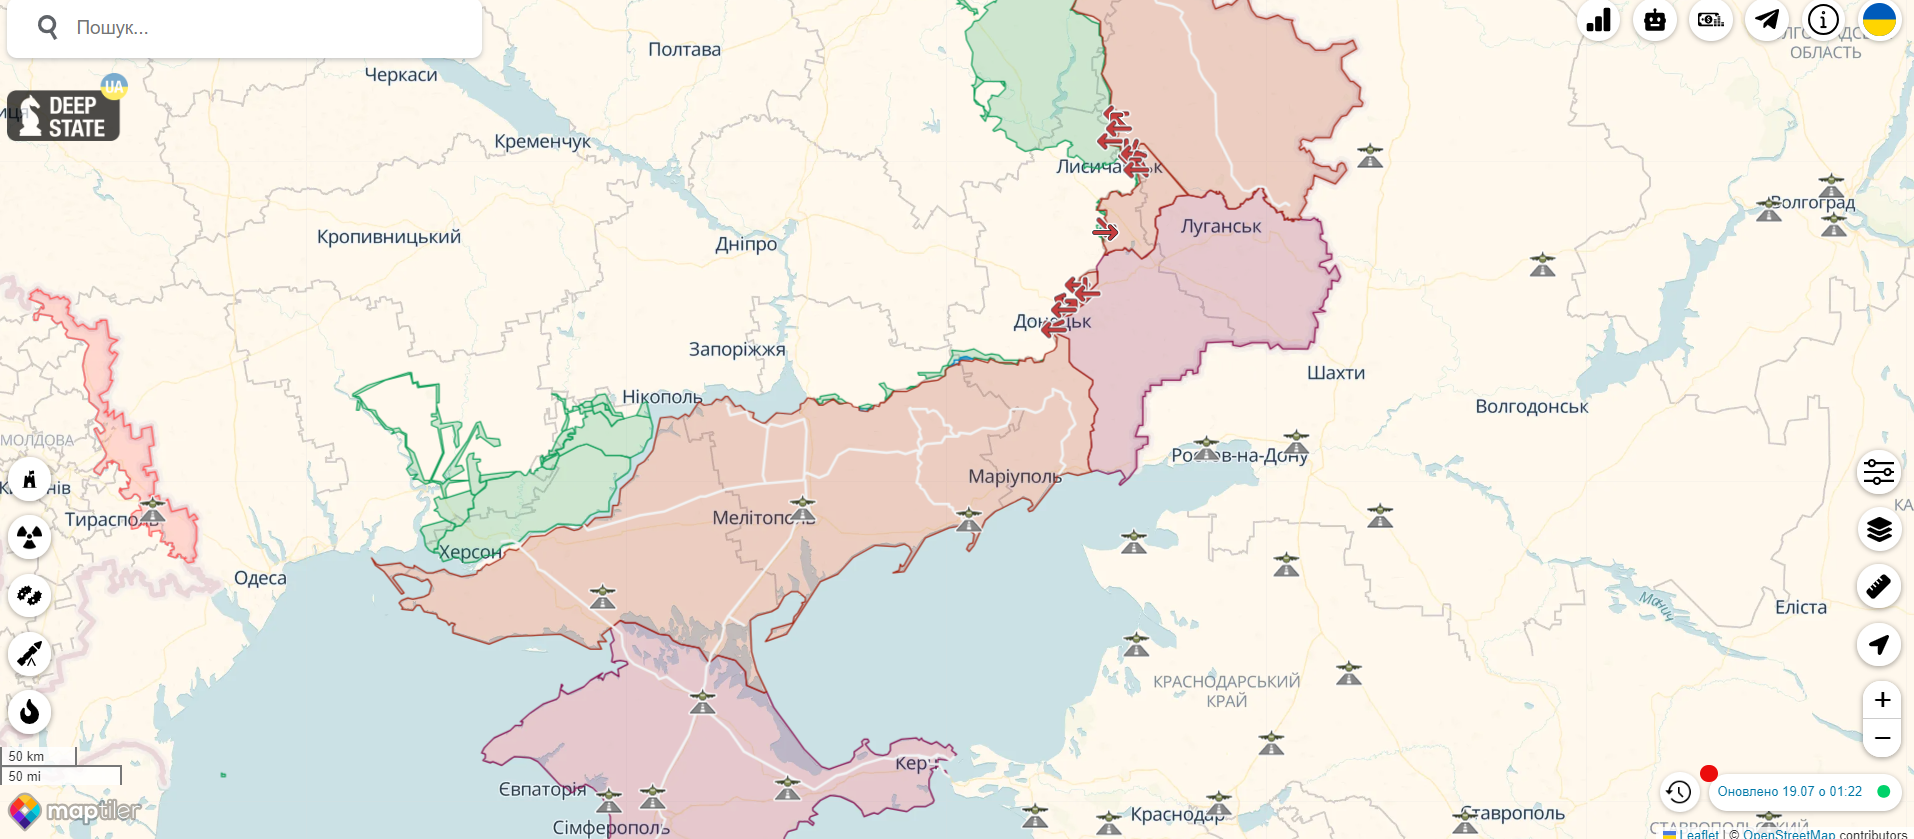 РФ готовит имитированные "выборы" на оккупированных территориях: какие манипуляции уже придумали